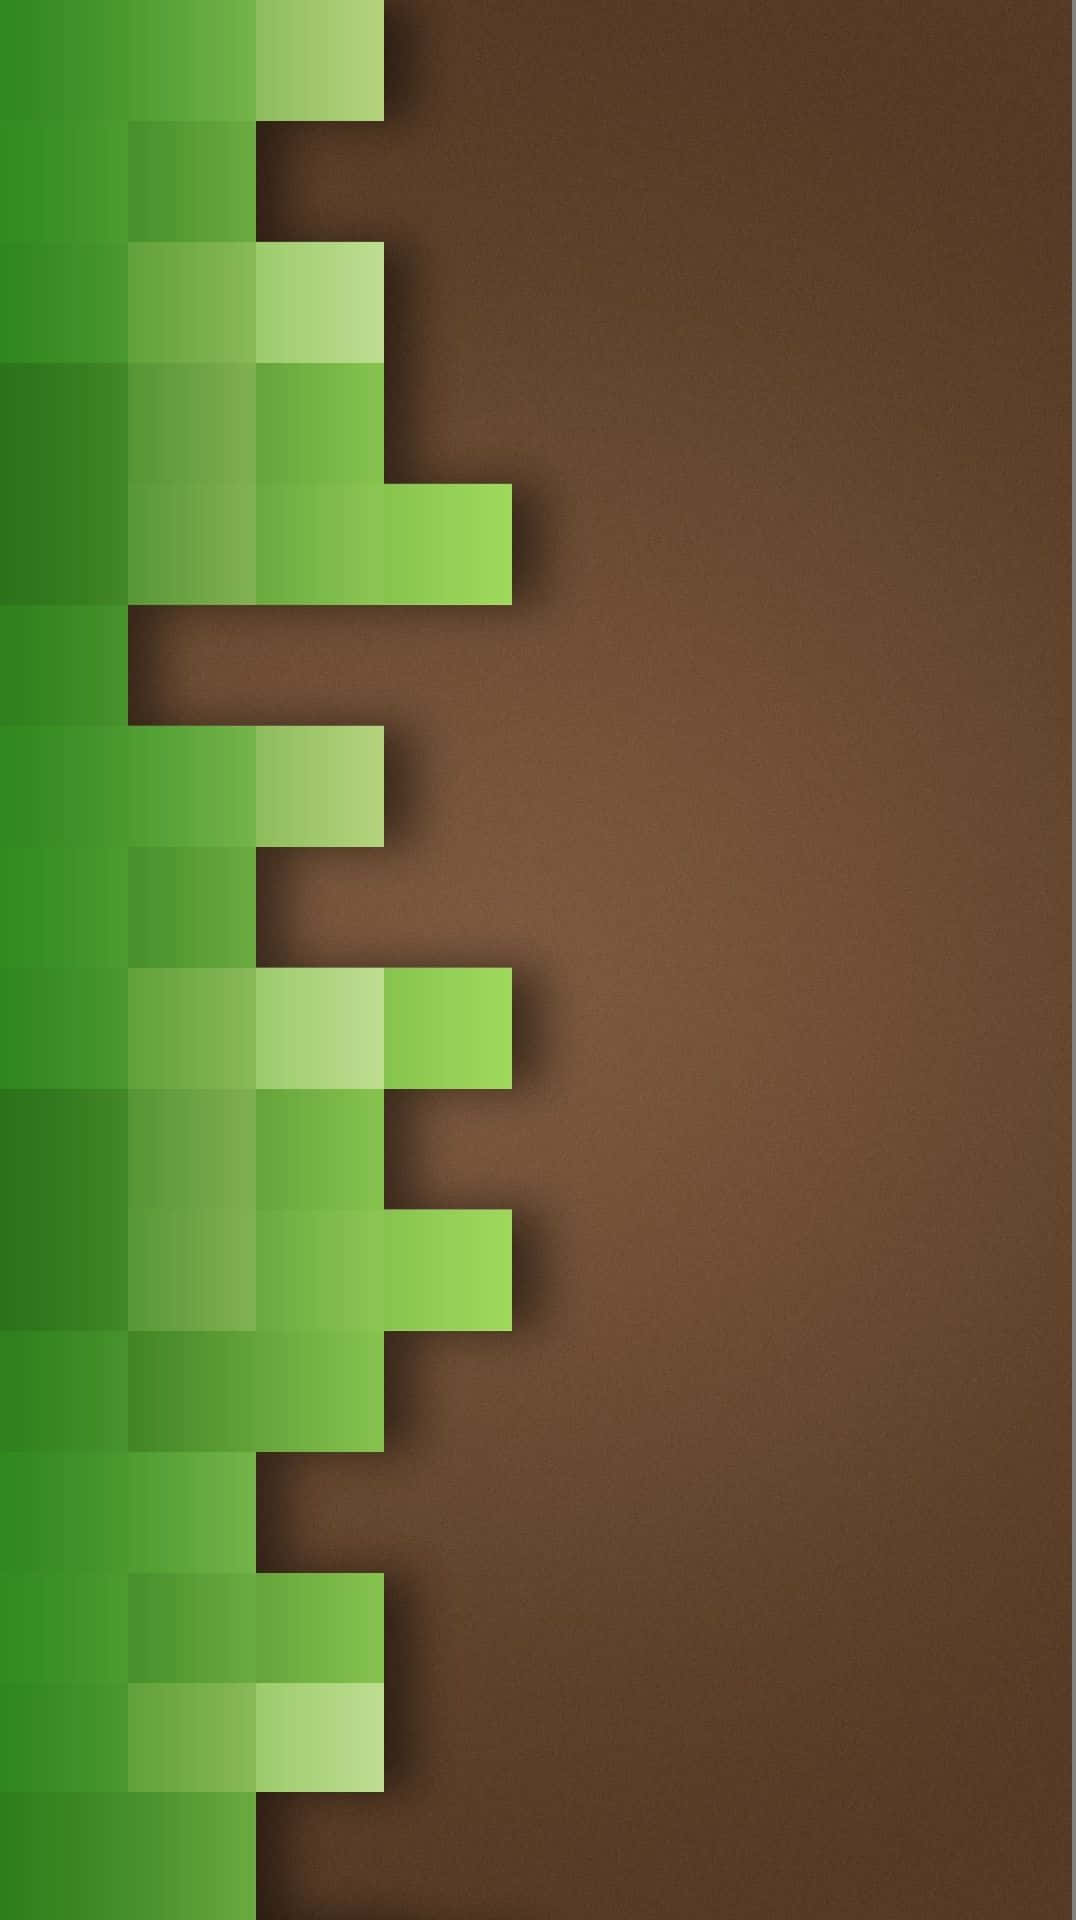 Fondode Pantalla De Minecraft En Color Verde Y Marrón Para Pixel 3xl.